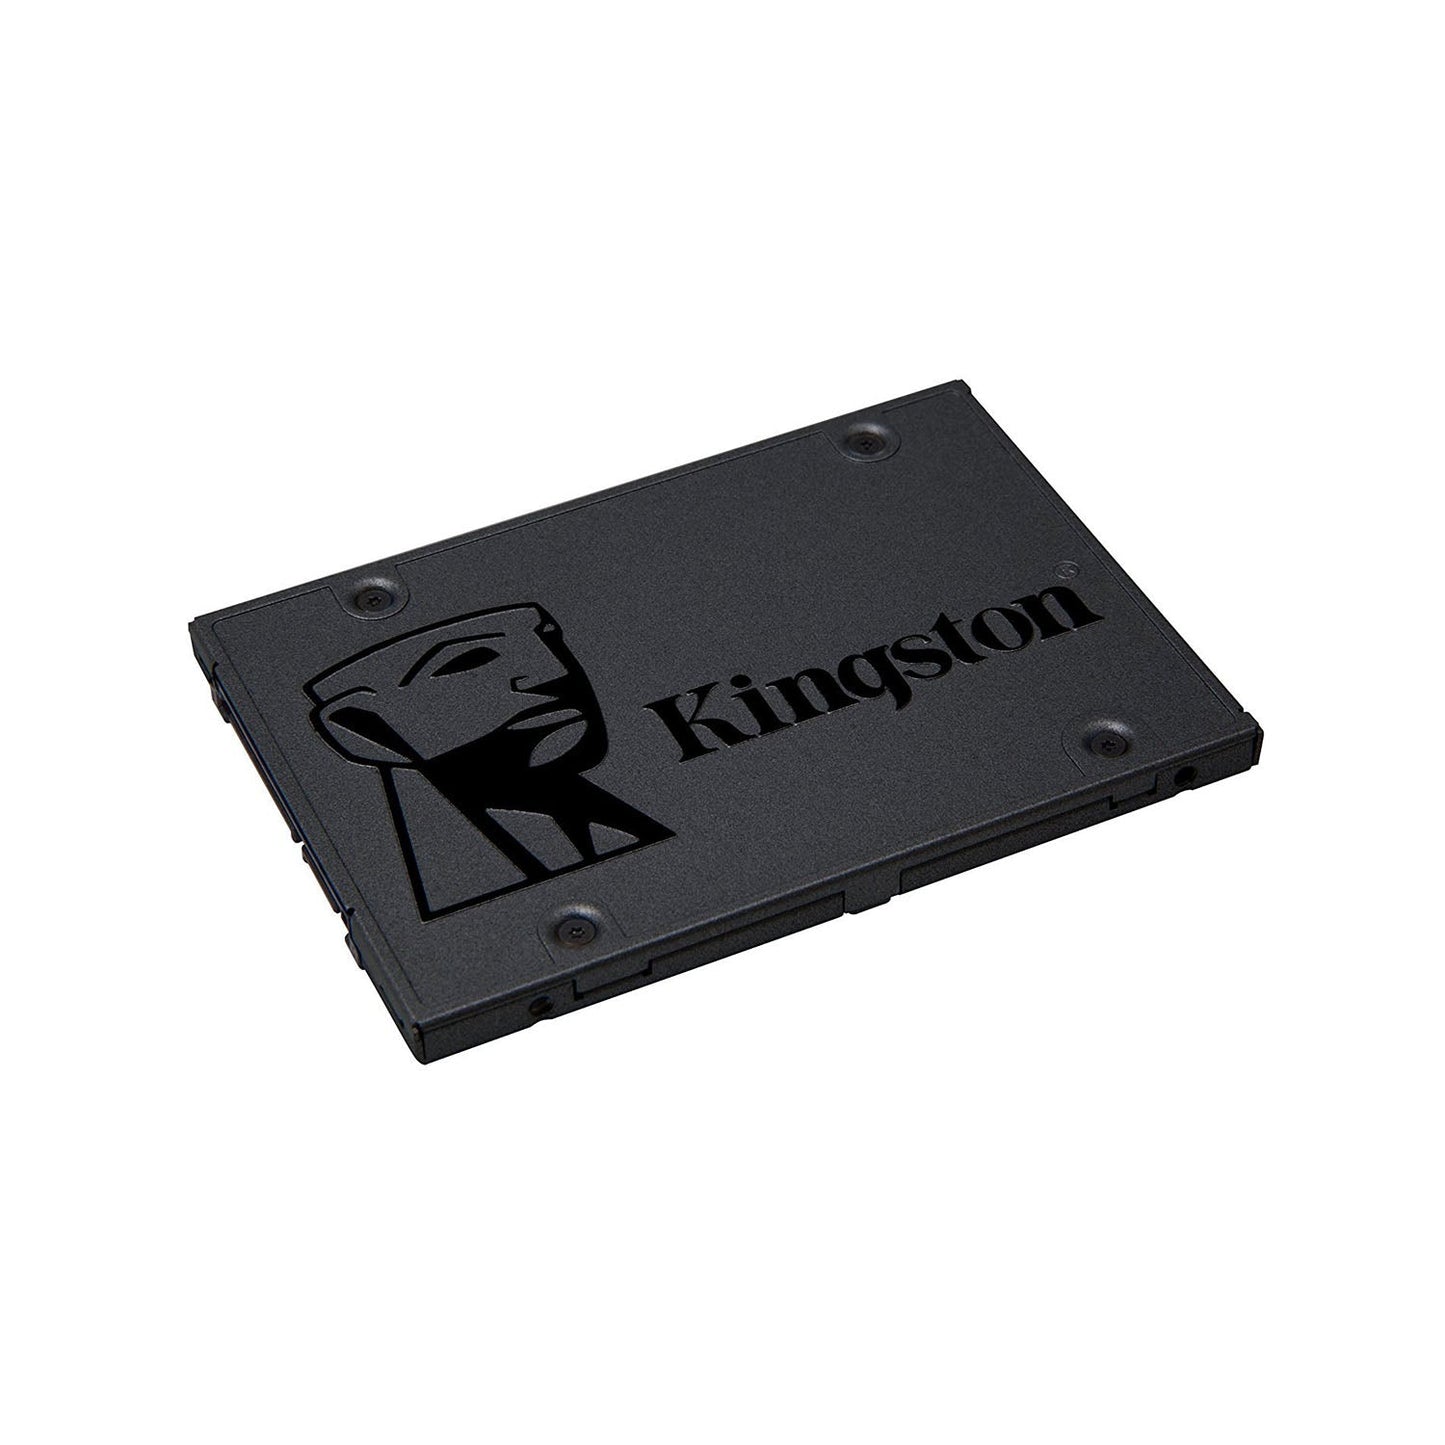 किंग्स्टन A400 960GB 2.5-इंच SATA इंटरनल सॉलिड स्टेट ड्राइव